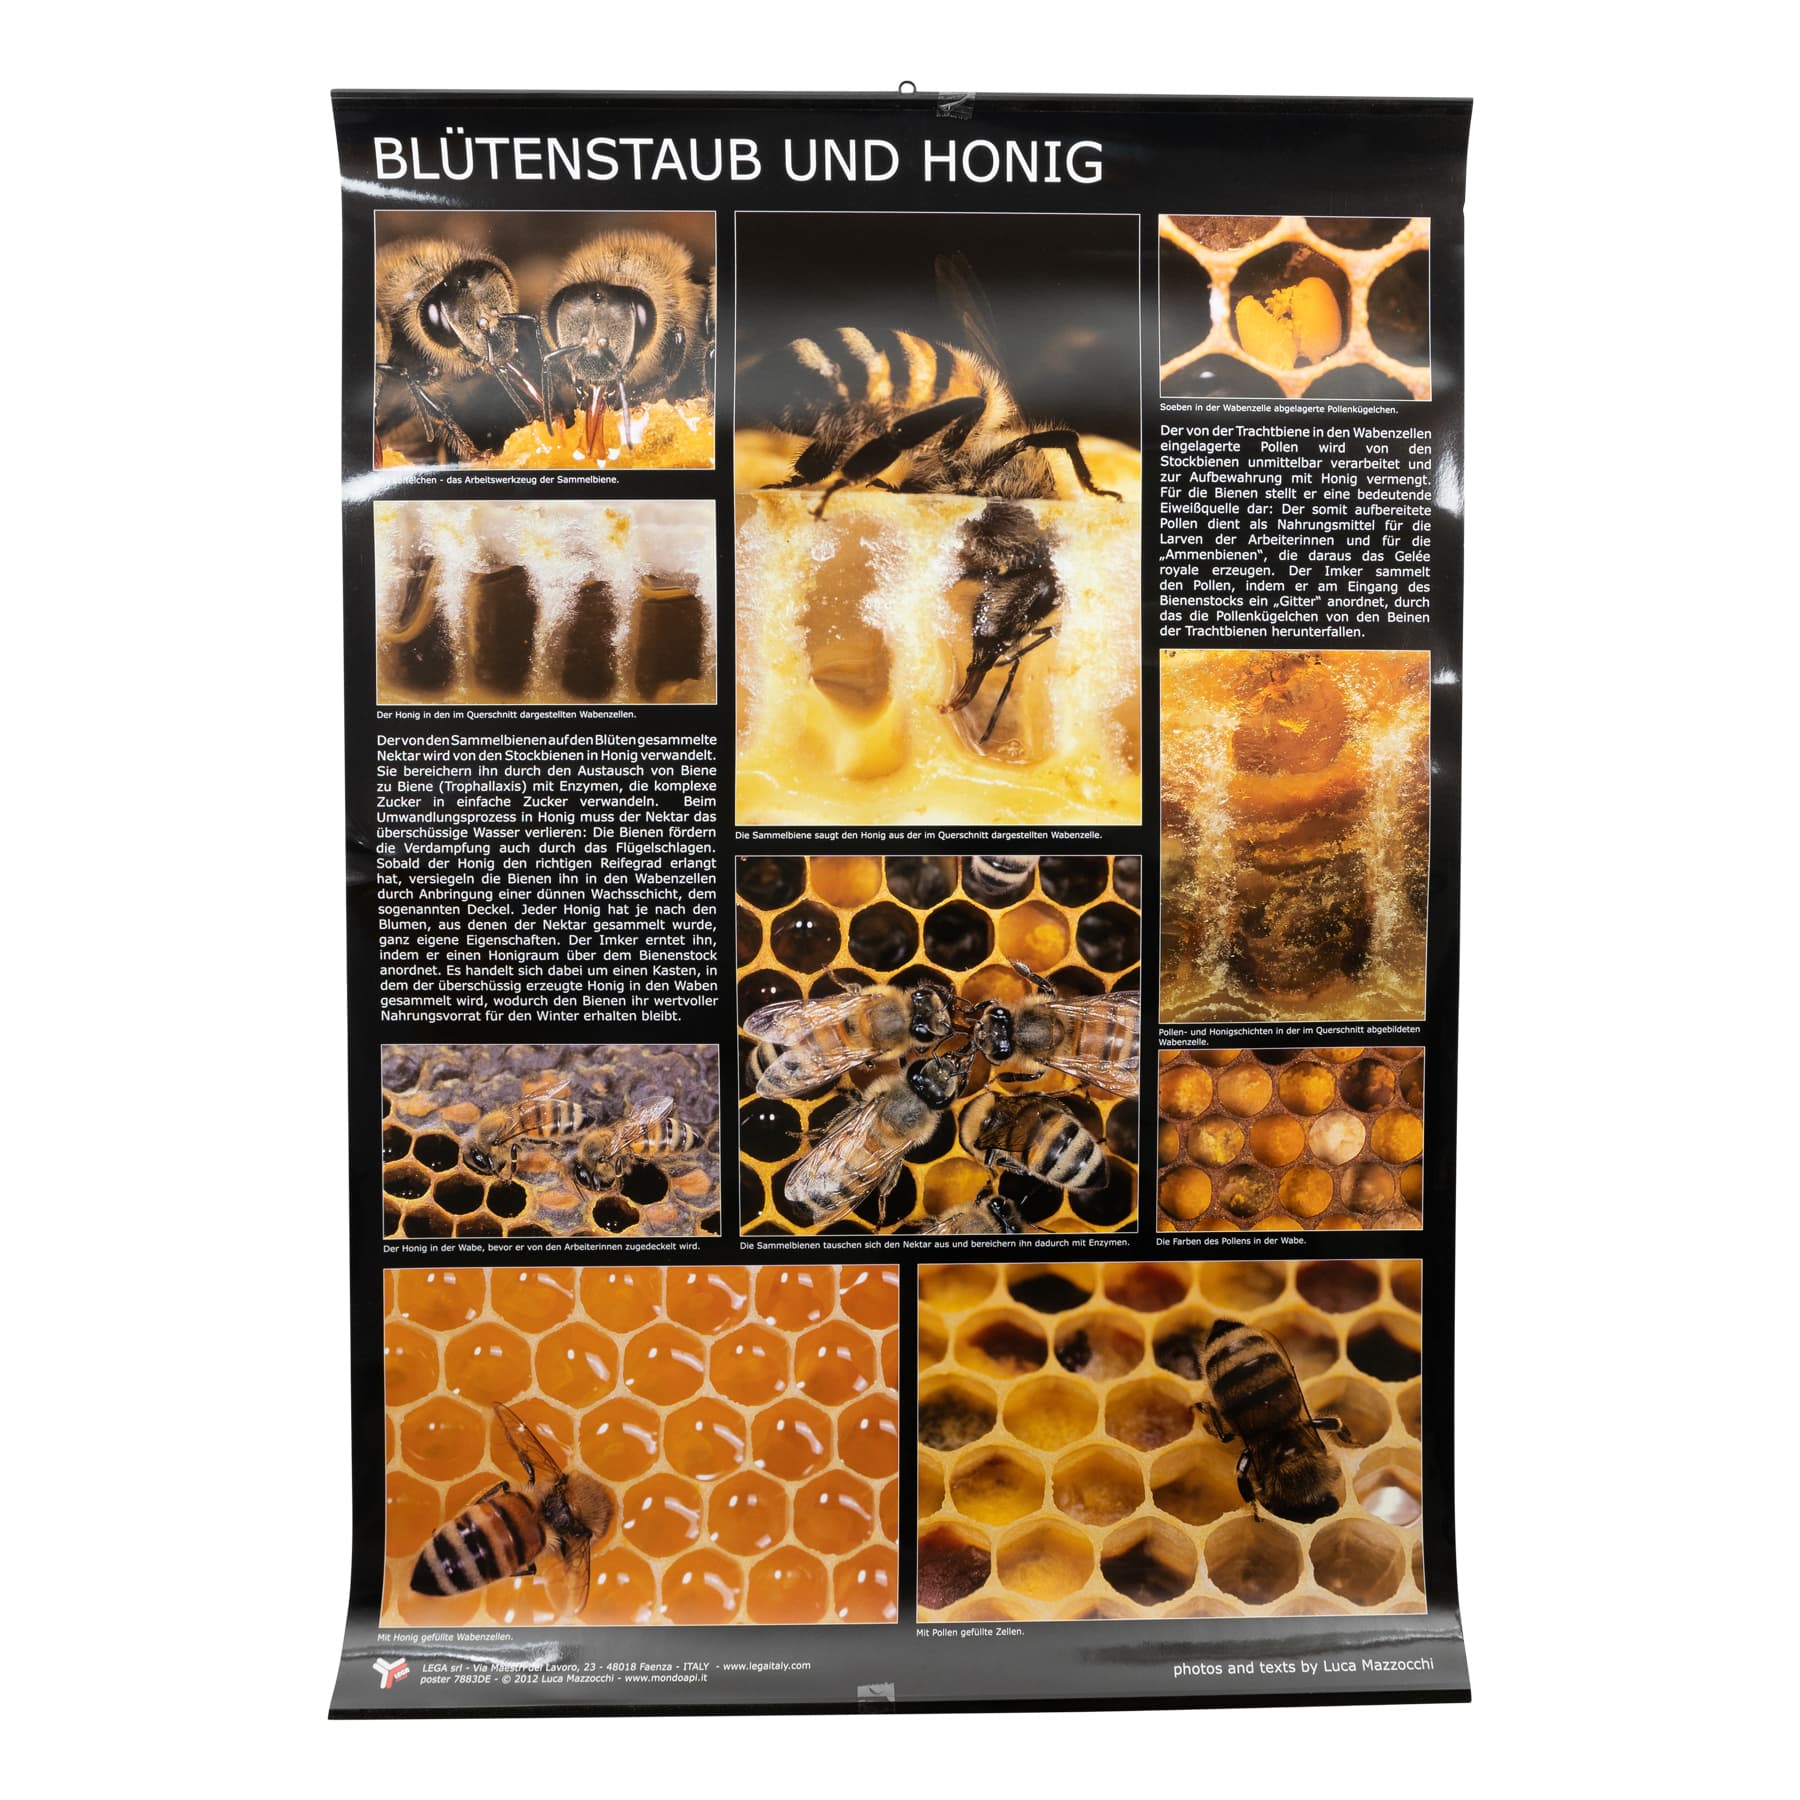 Plakat/Poster Blütenstaub (Pollen) und Honig 60 cm breit 90 cm hoch